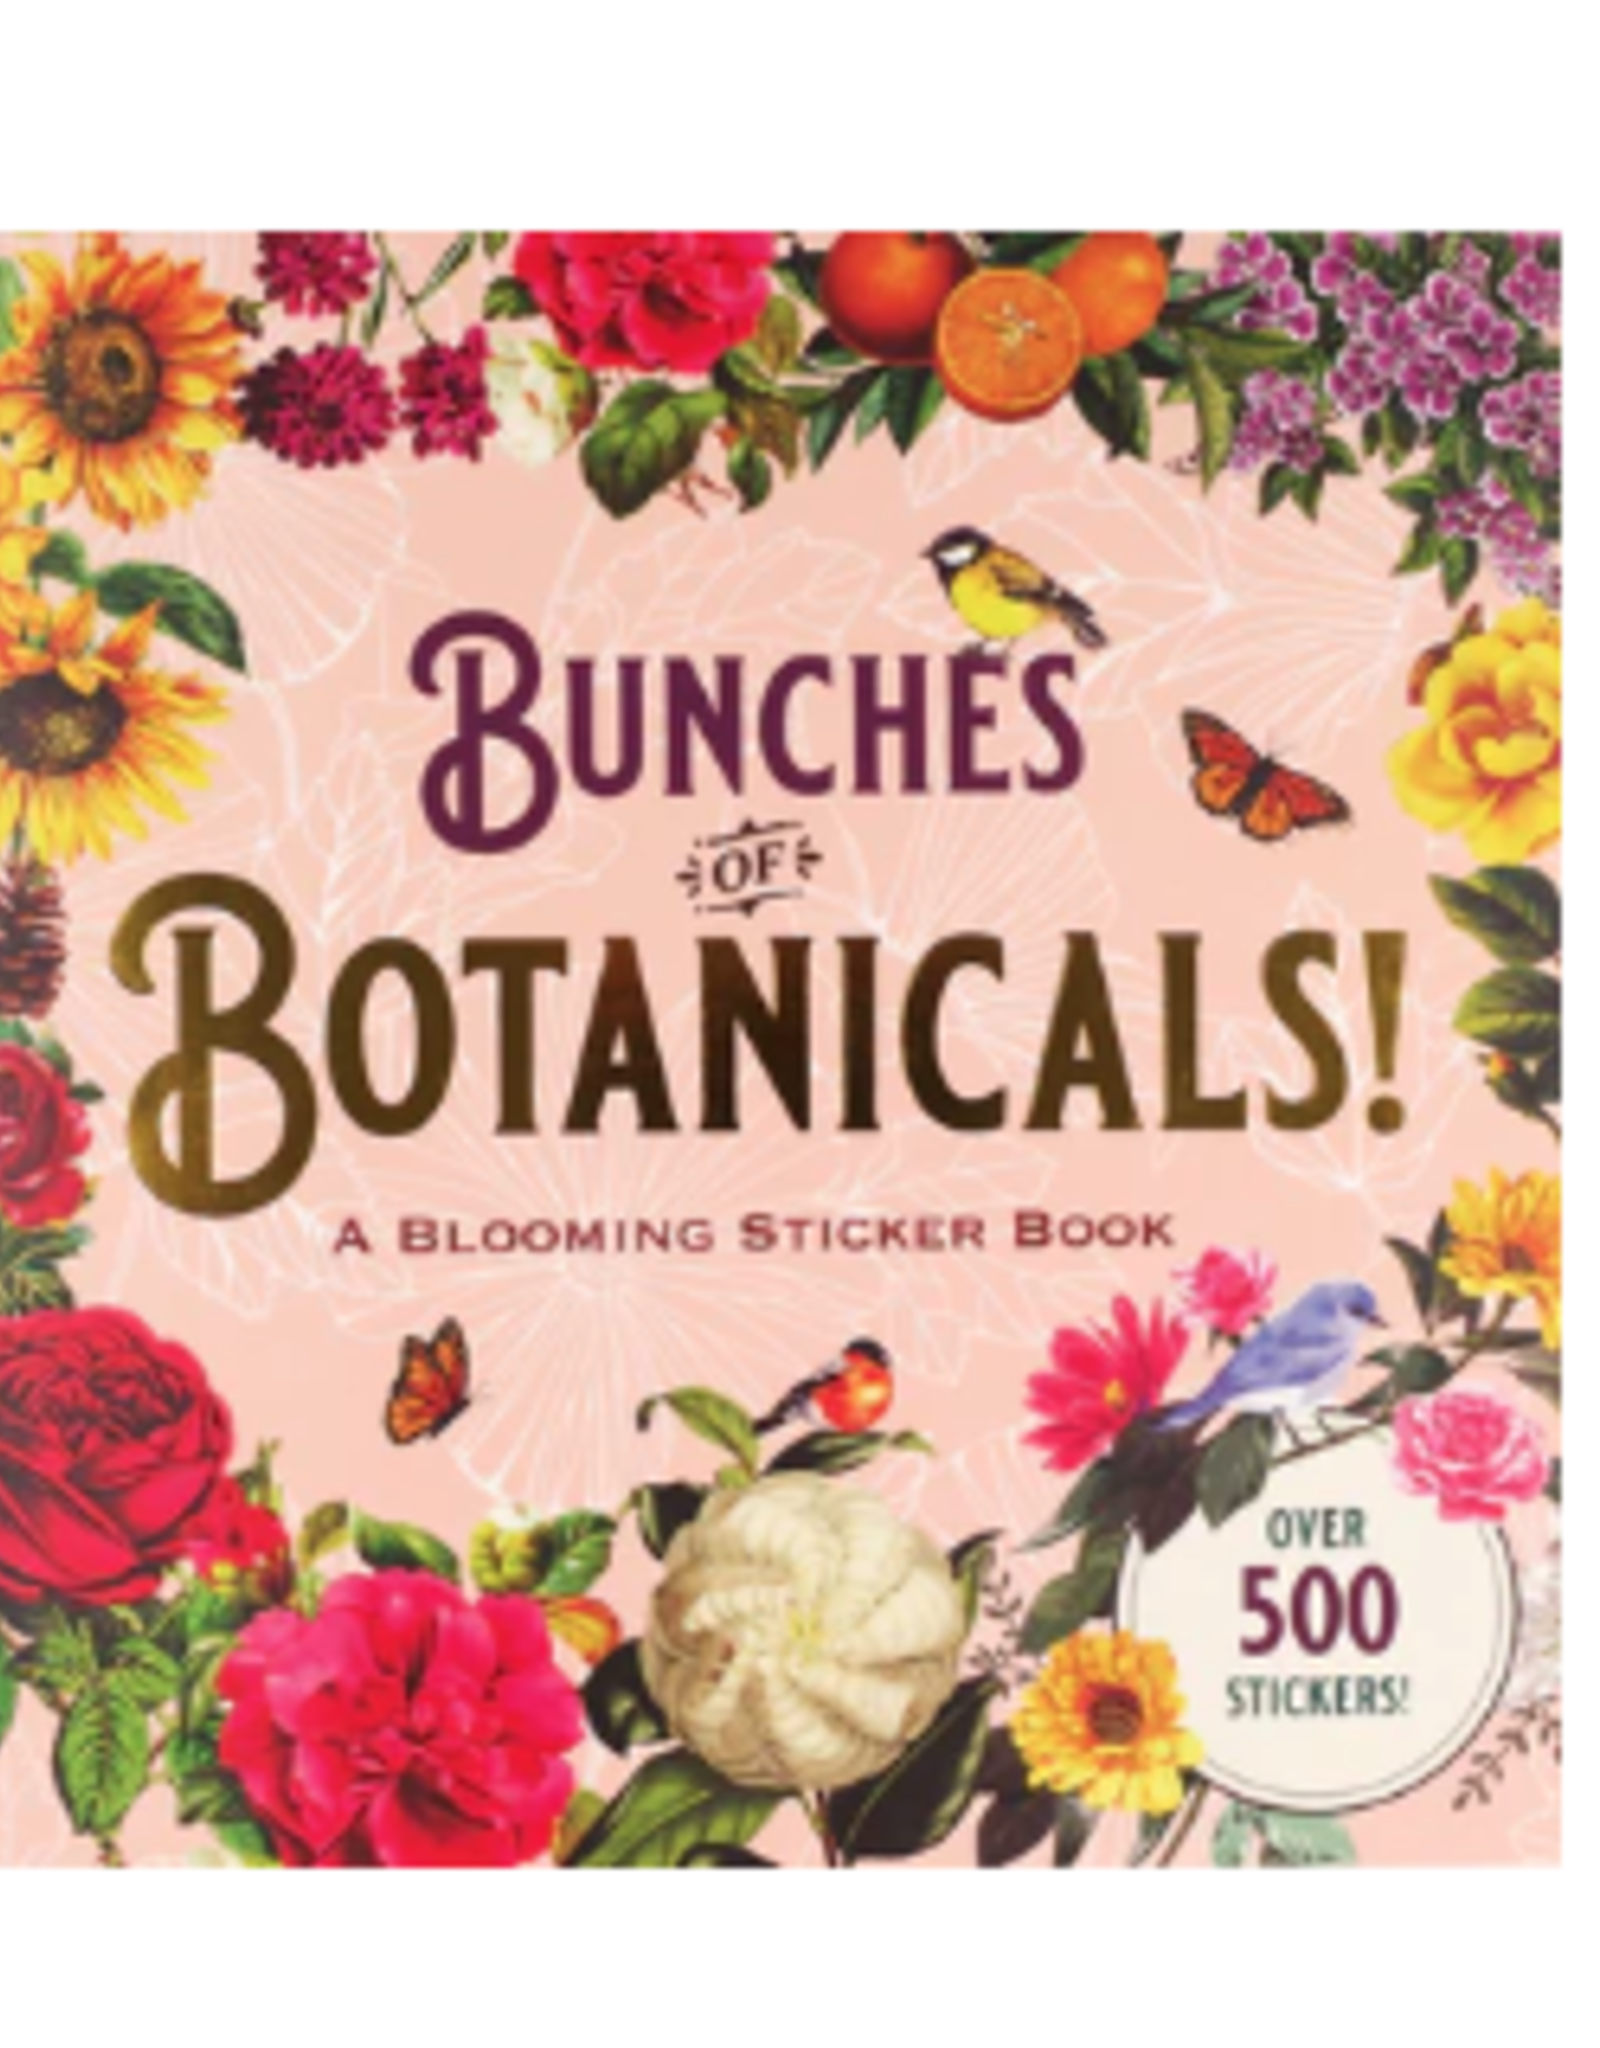 Peter Pauper Press Bunch of Botanicals !Sticker Book